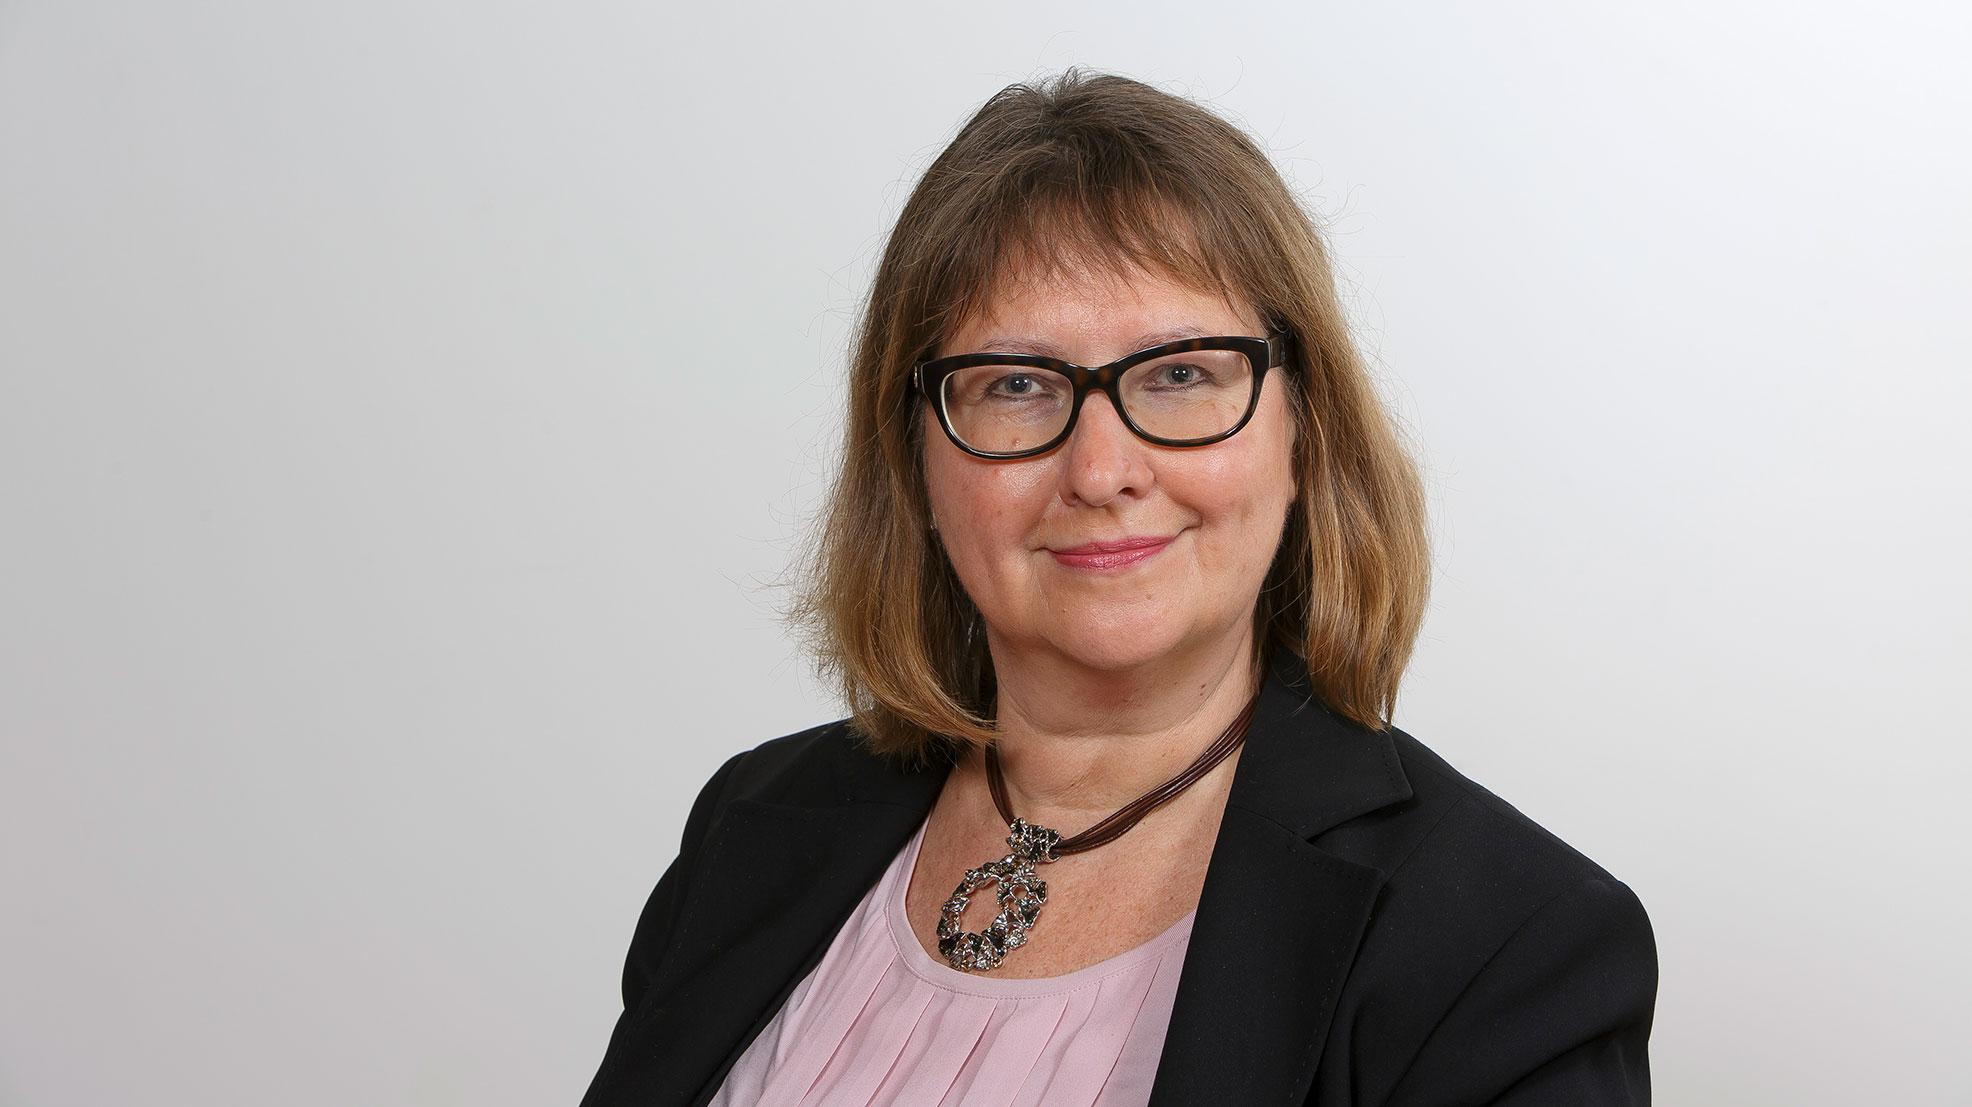 Eve Kyntäjä är expert på invandringspolitik på FFC